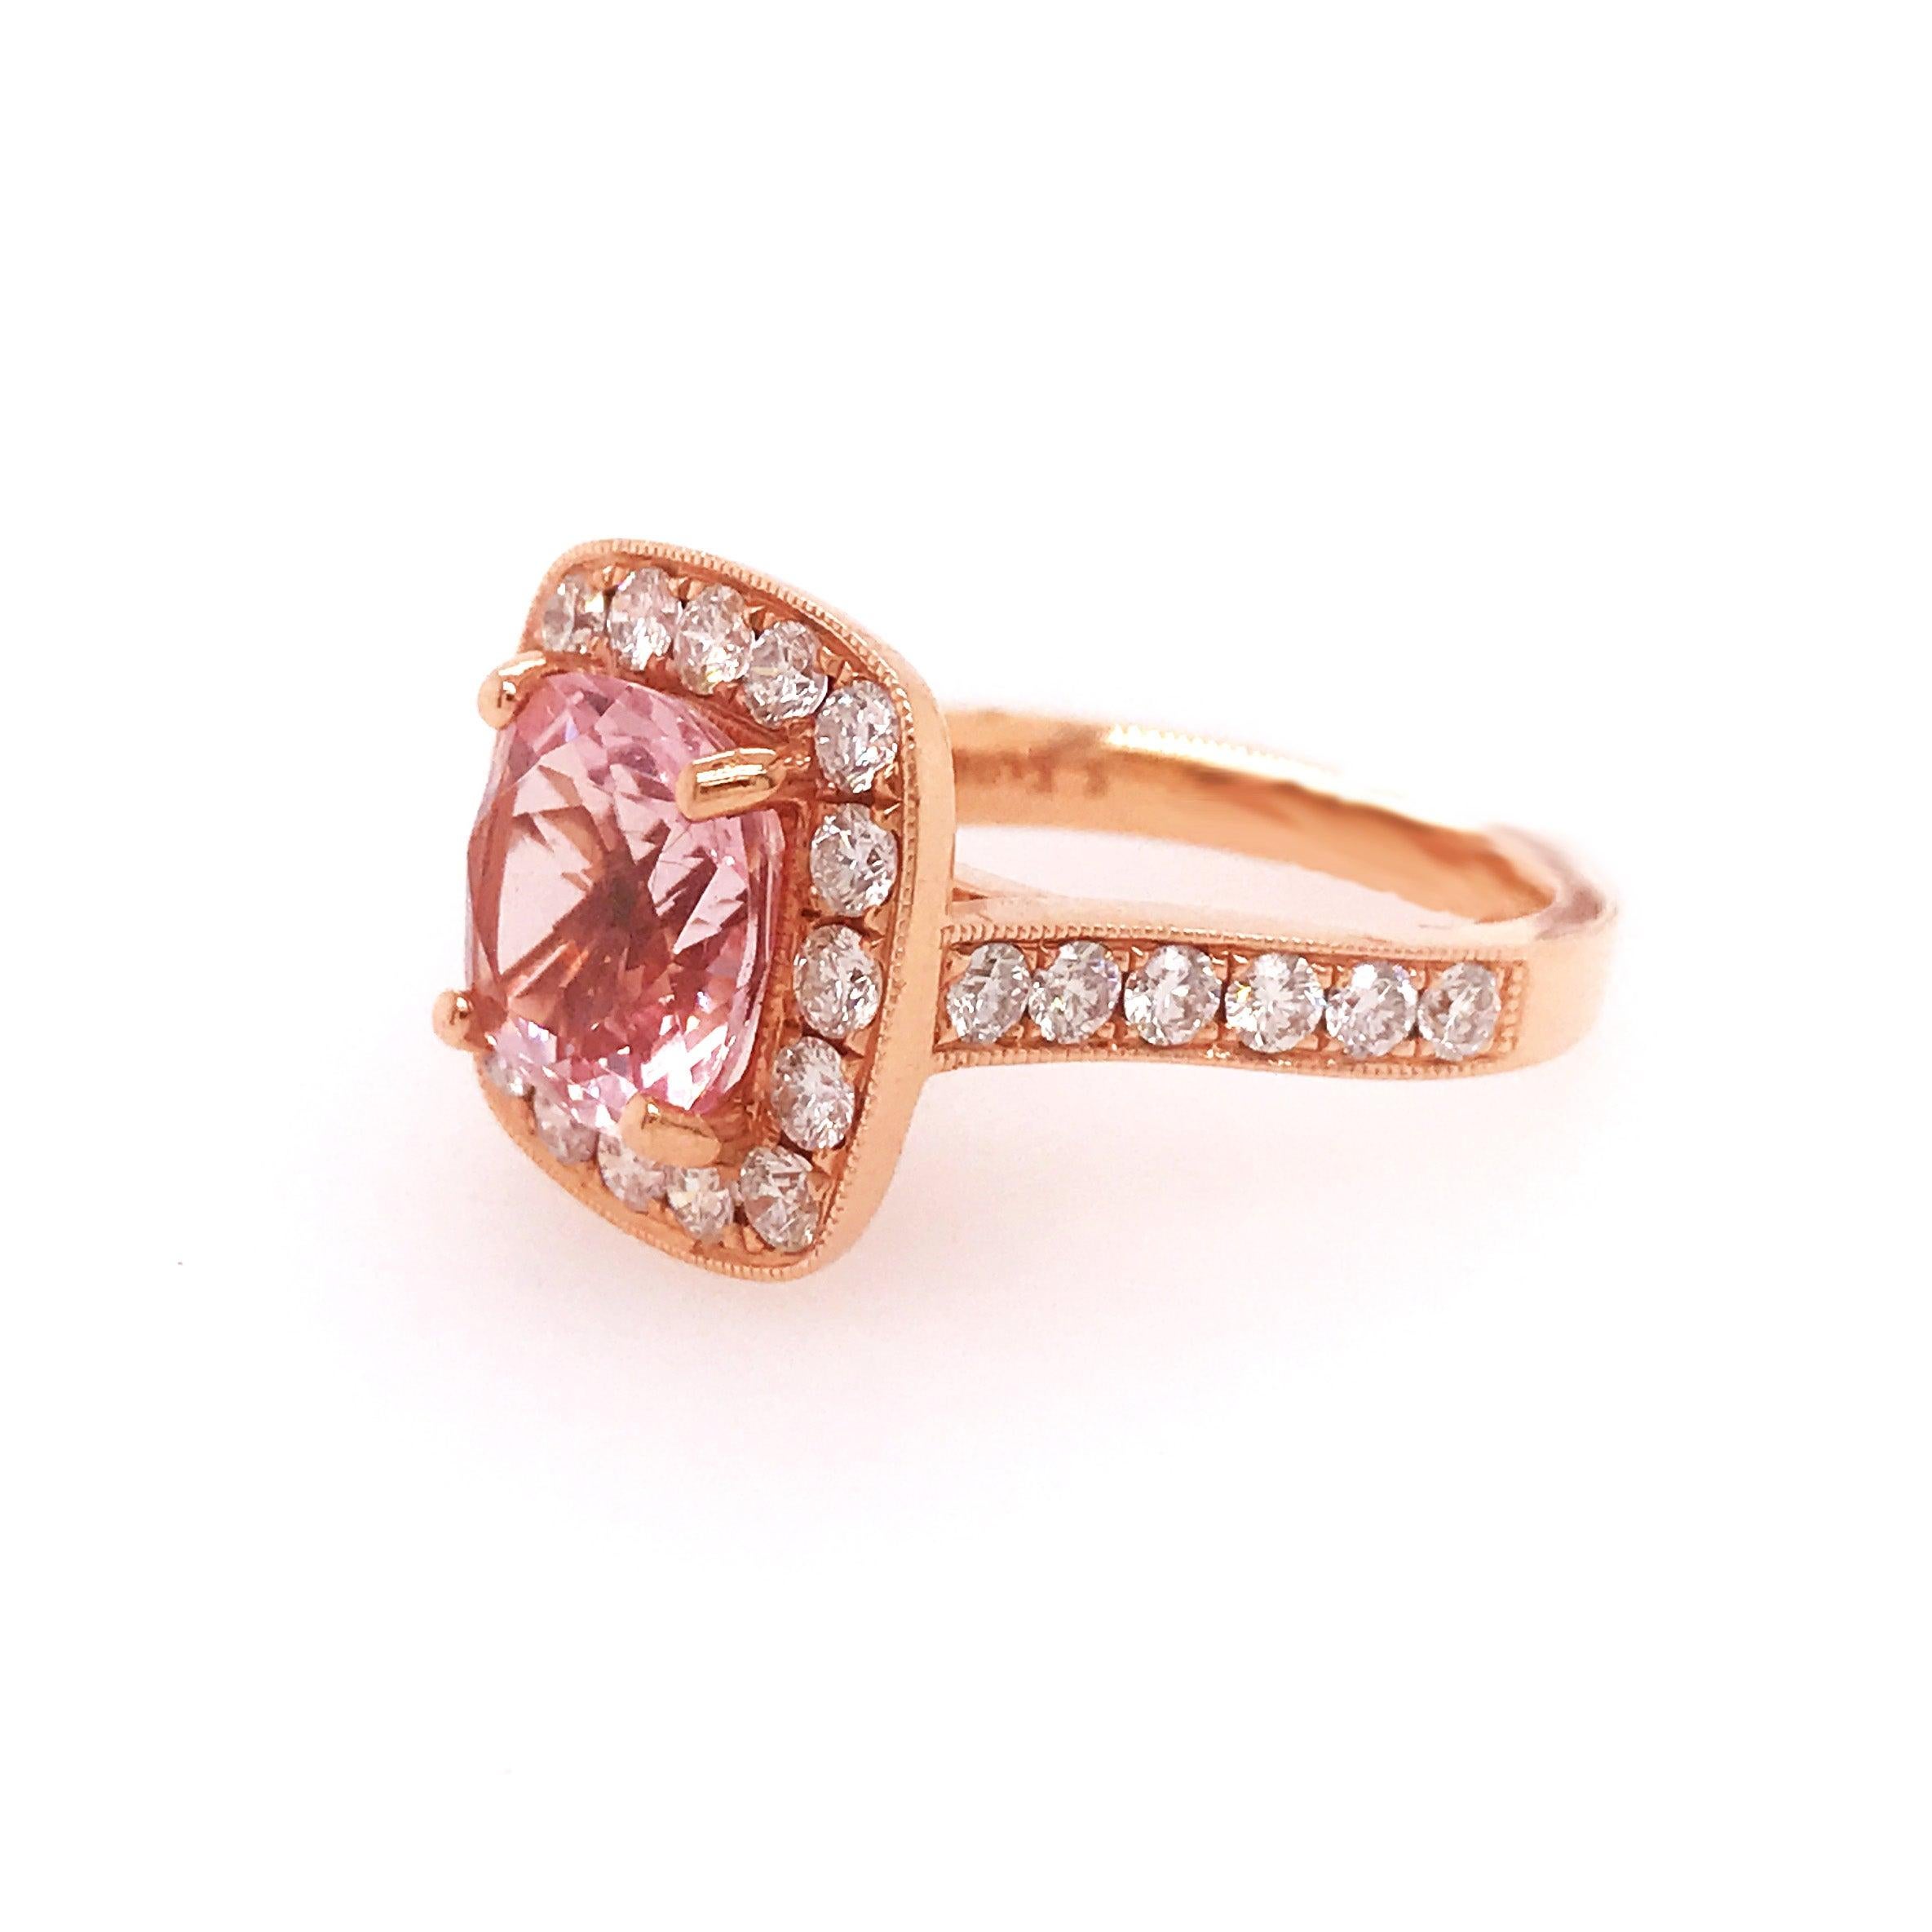 For Sale:  3.25 Carat Morganite and 1.25 Carat Diamond Halo Ring in 14 Karat Rose Gold 3